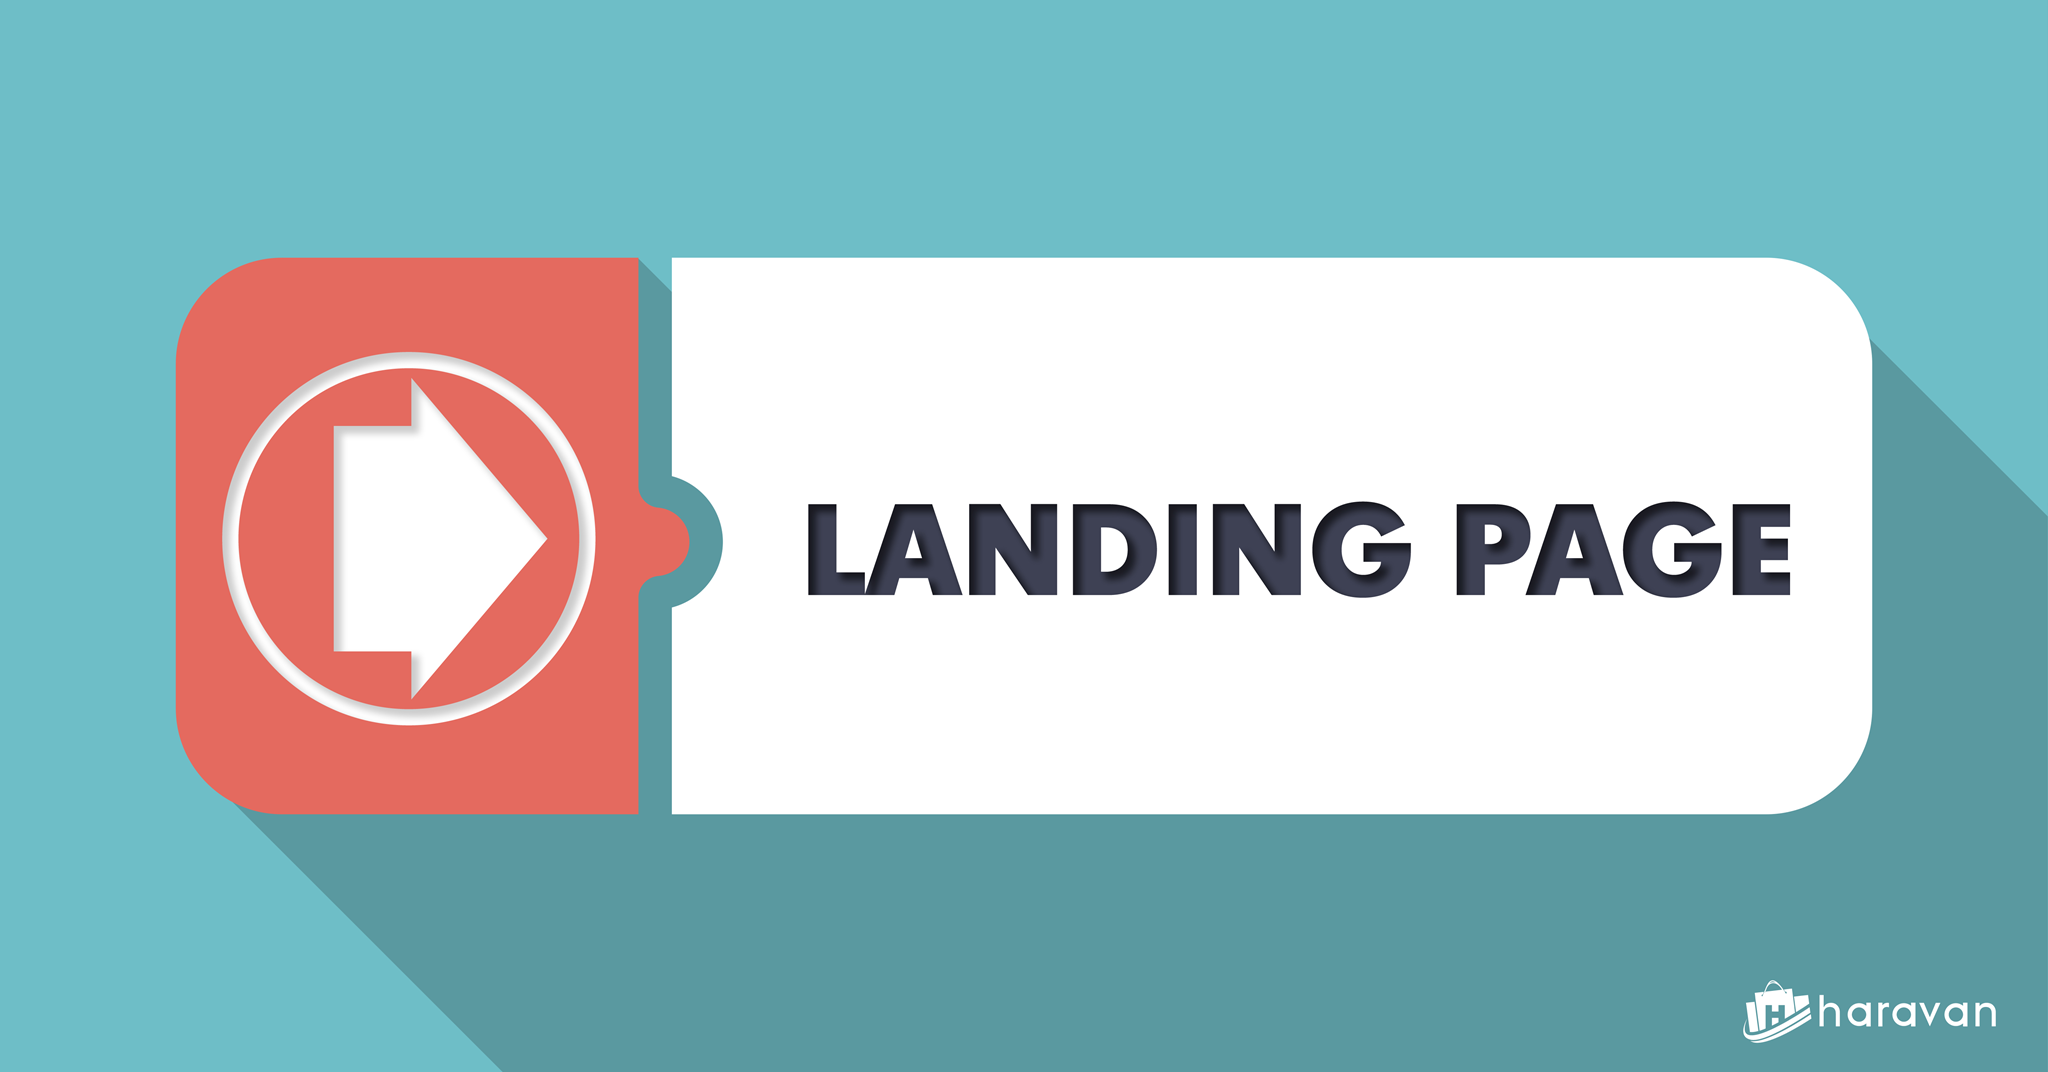 Cùng tìm hiểu cấu trúc của một Landing Page giới thiệu giải pháp, dịch vụ hiệu quả